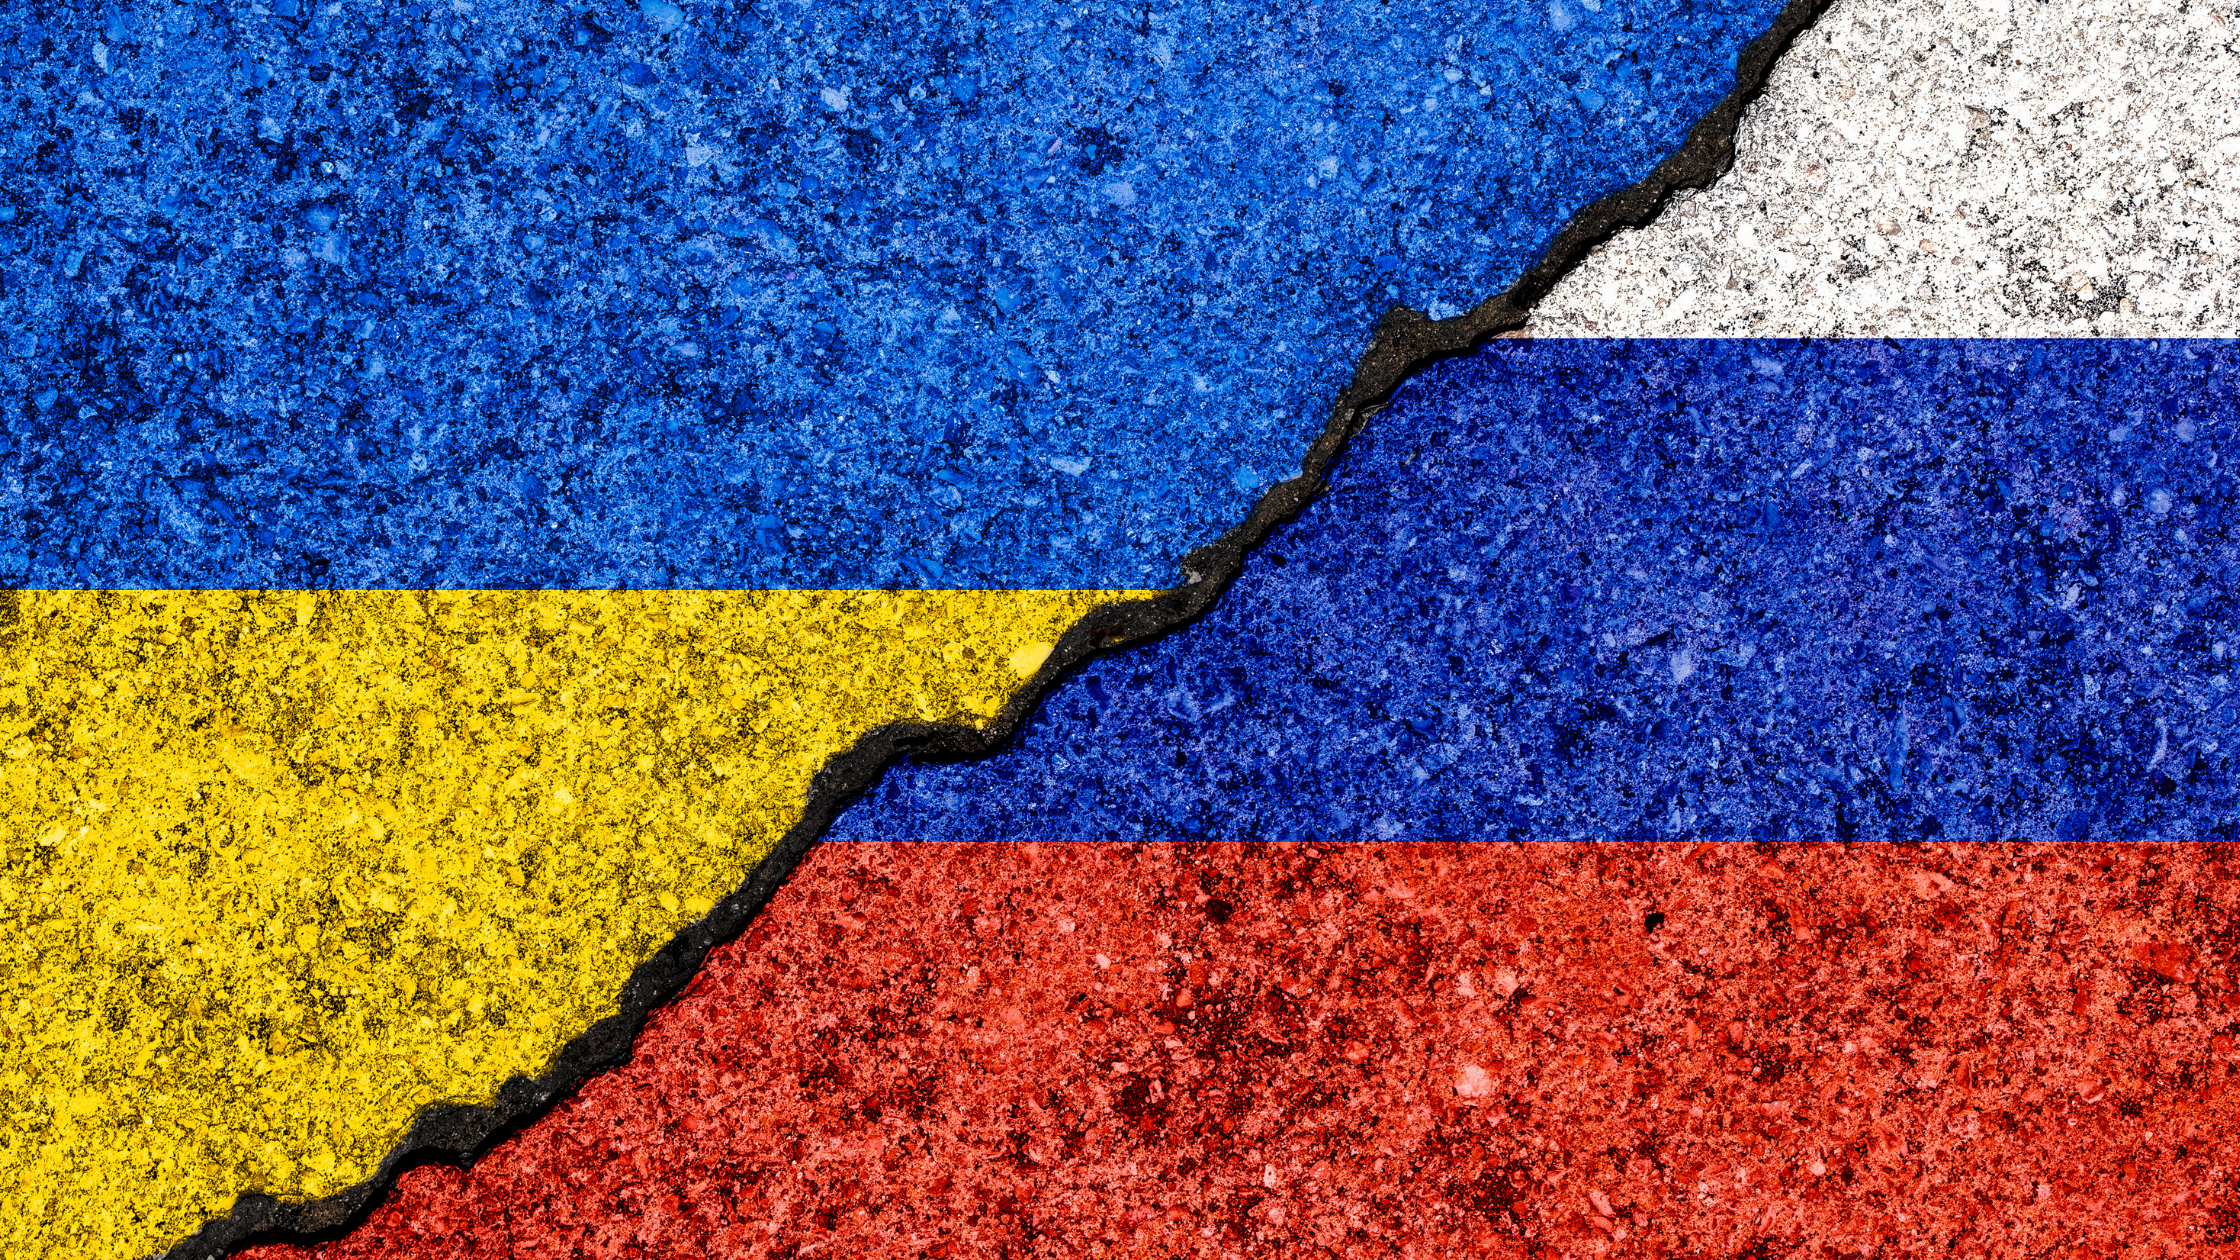 What’s Happening Between Russia and Ukraine?